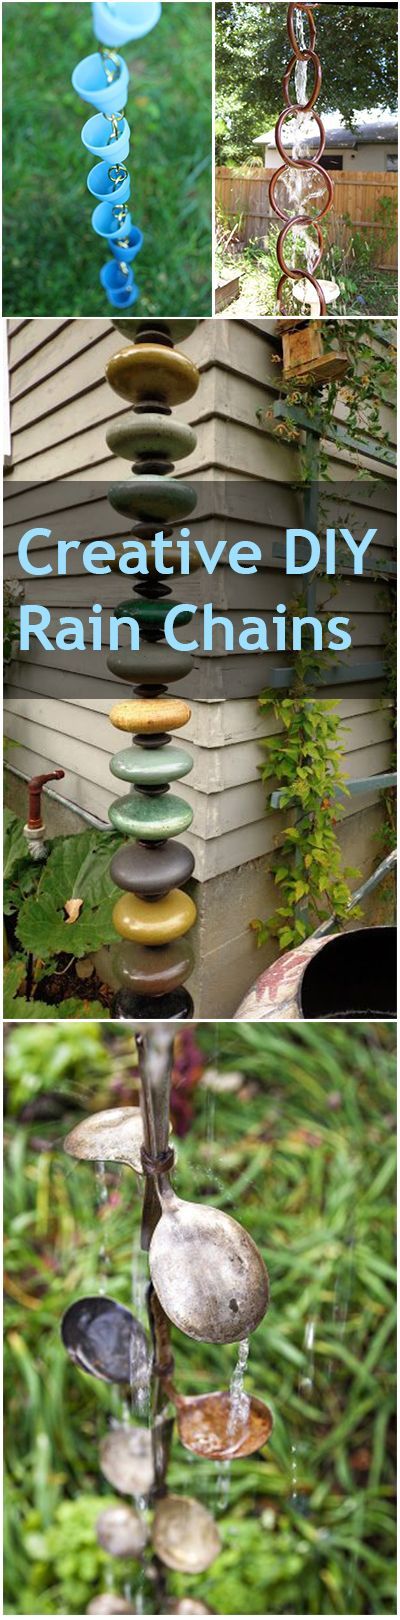 Creative DIY Rain Chains